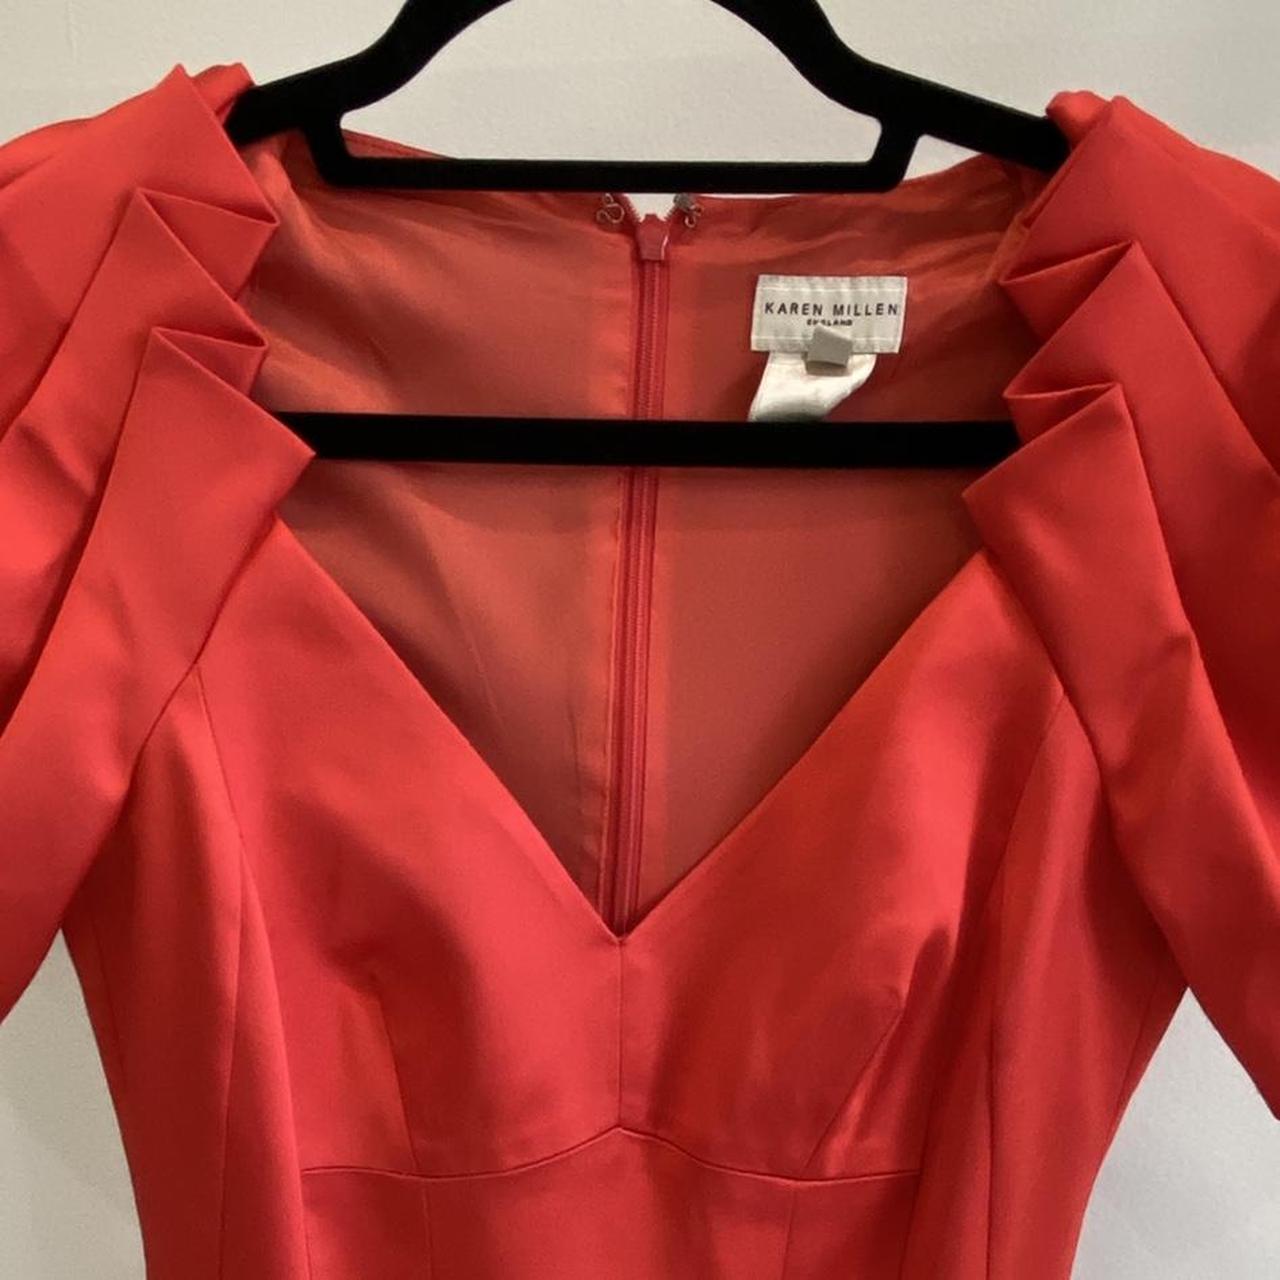 Karen Millen Women's Red Dress (4)